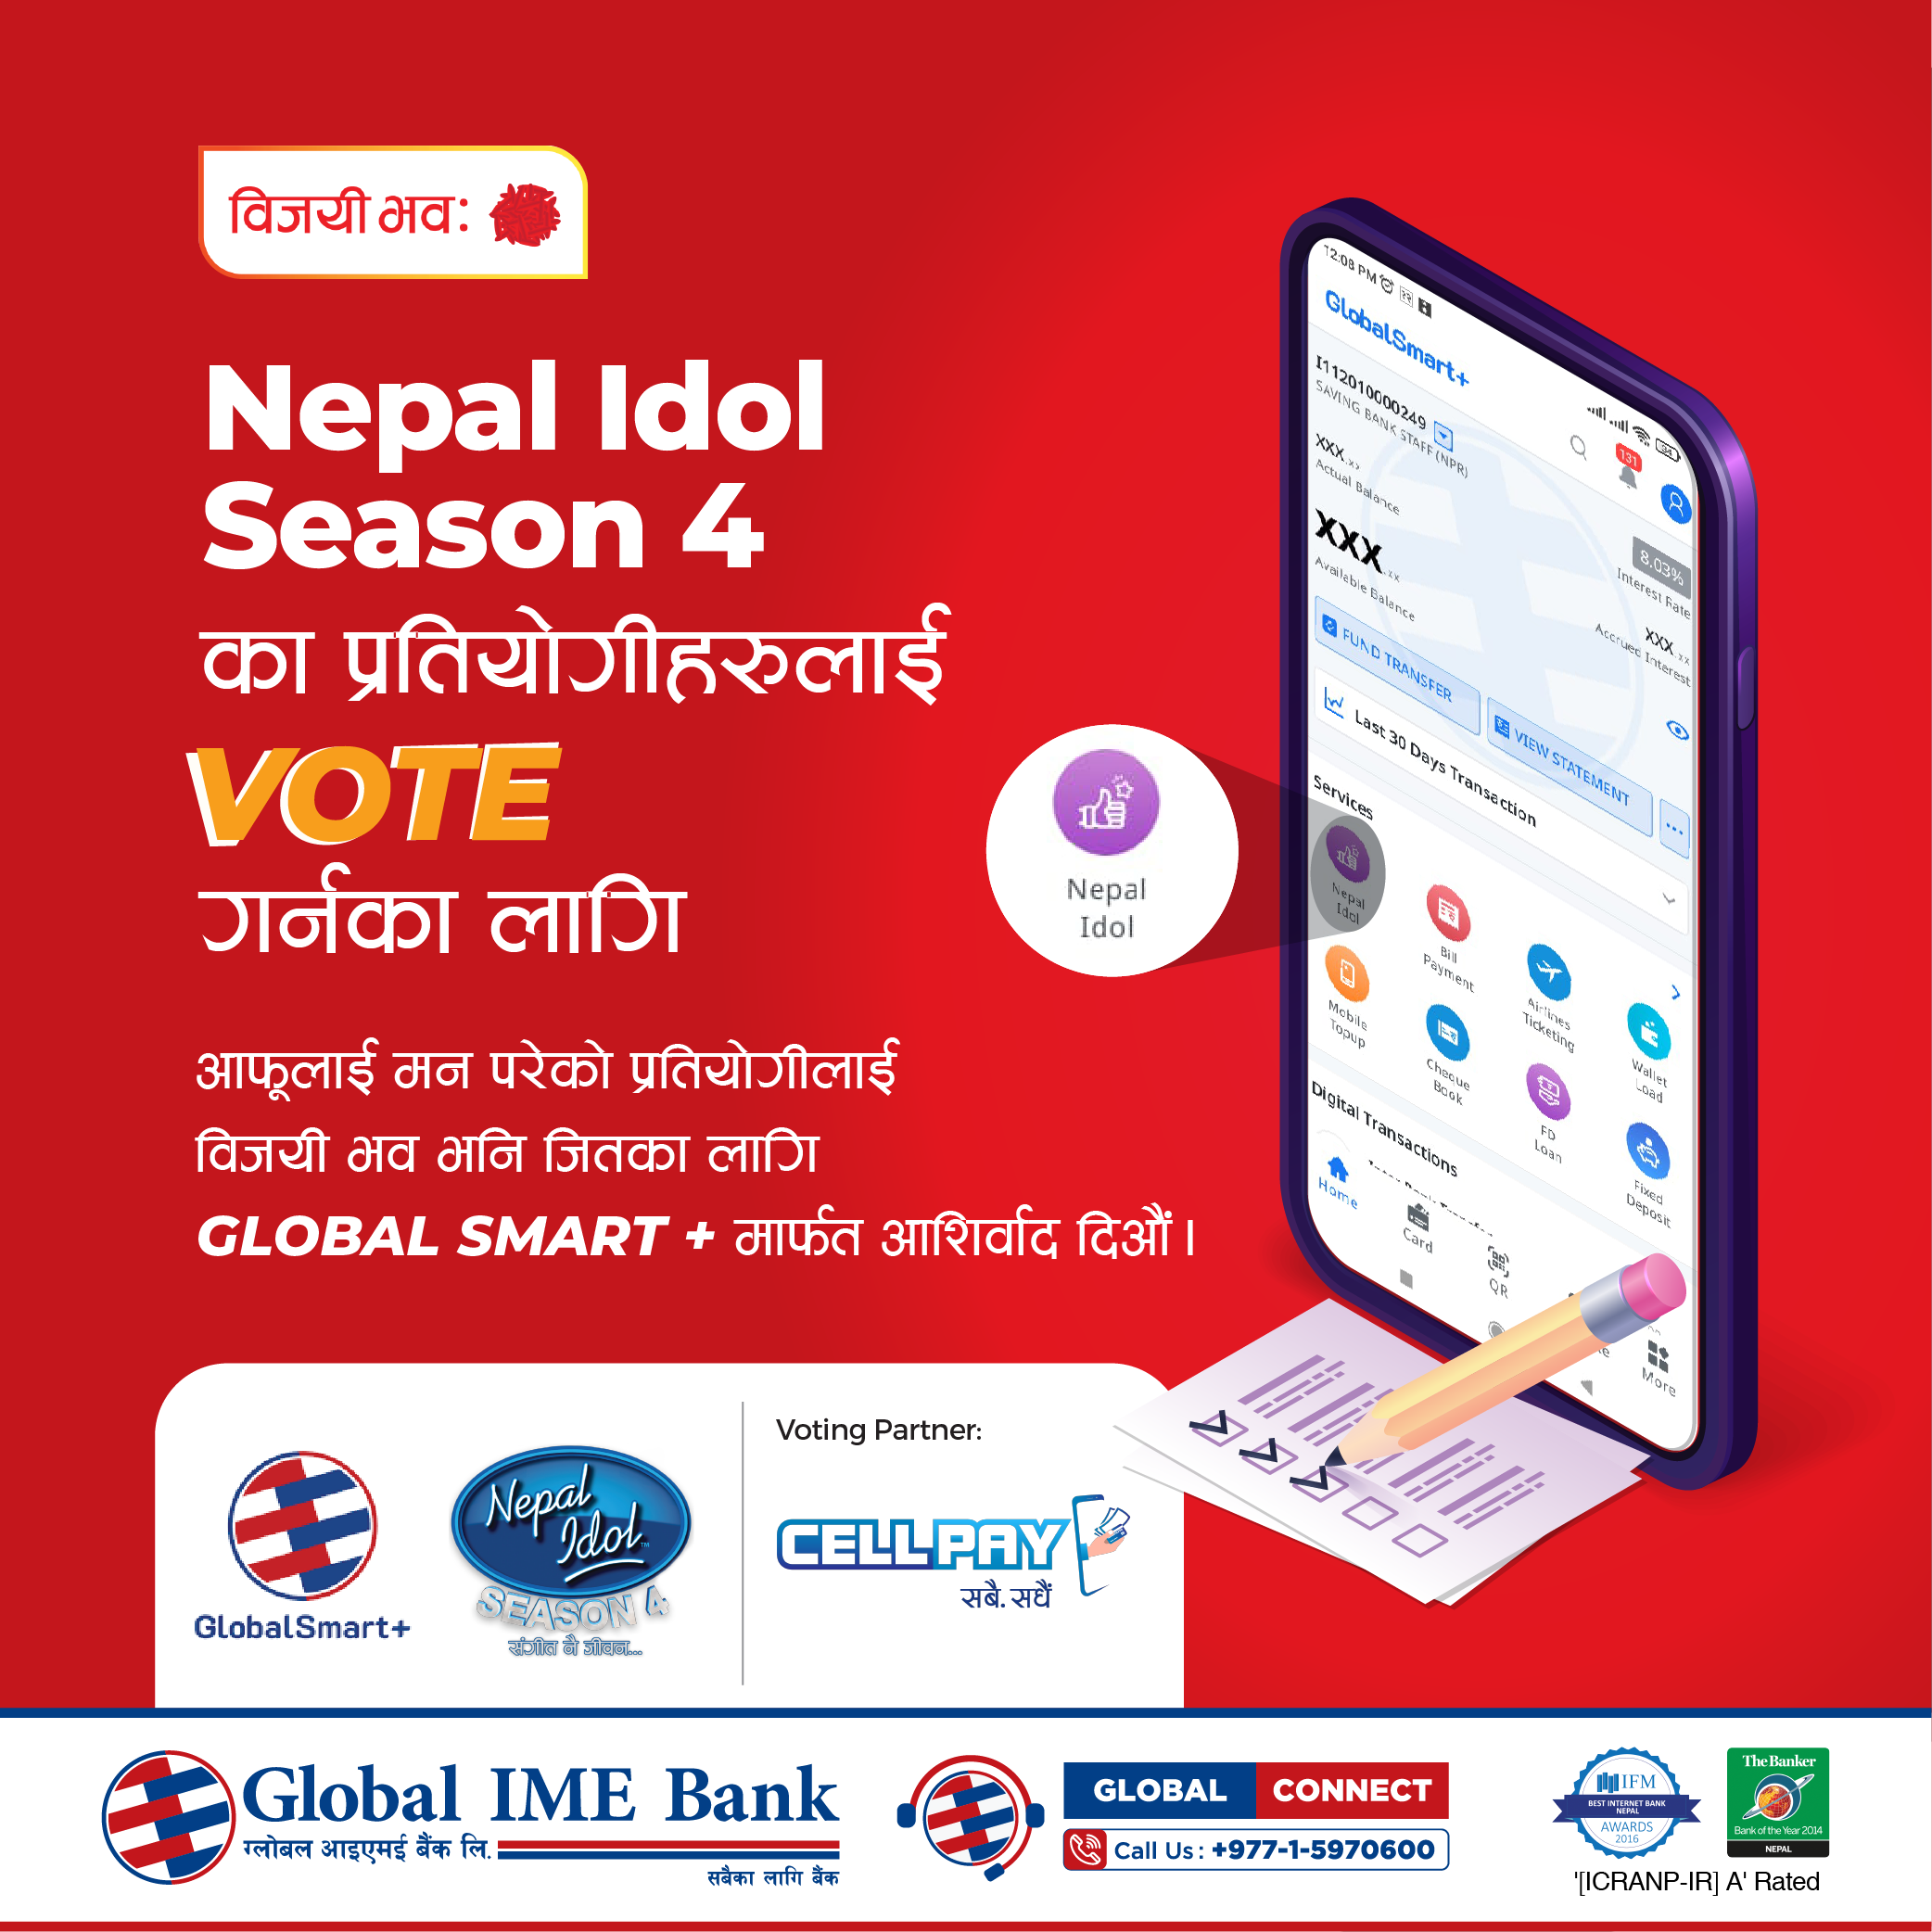 ग्लोबल आइएमई बैंकको मोबाइलएप“ग्लोबल स्मार्ट प्लस”मार्फत नेपाल आइडलमा भोटिङ गर्न सकिने